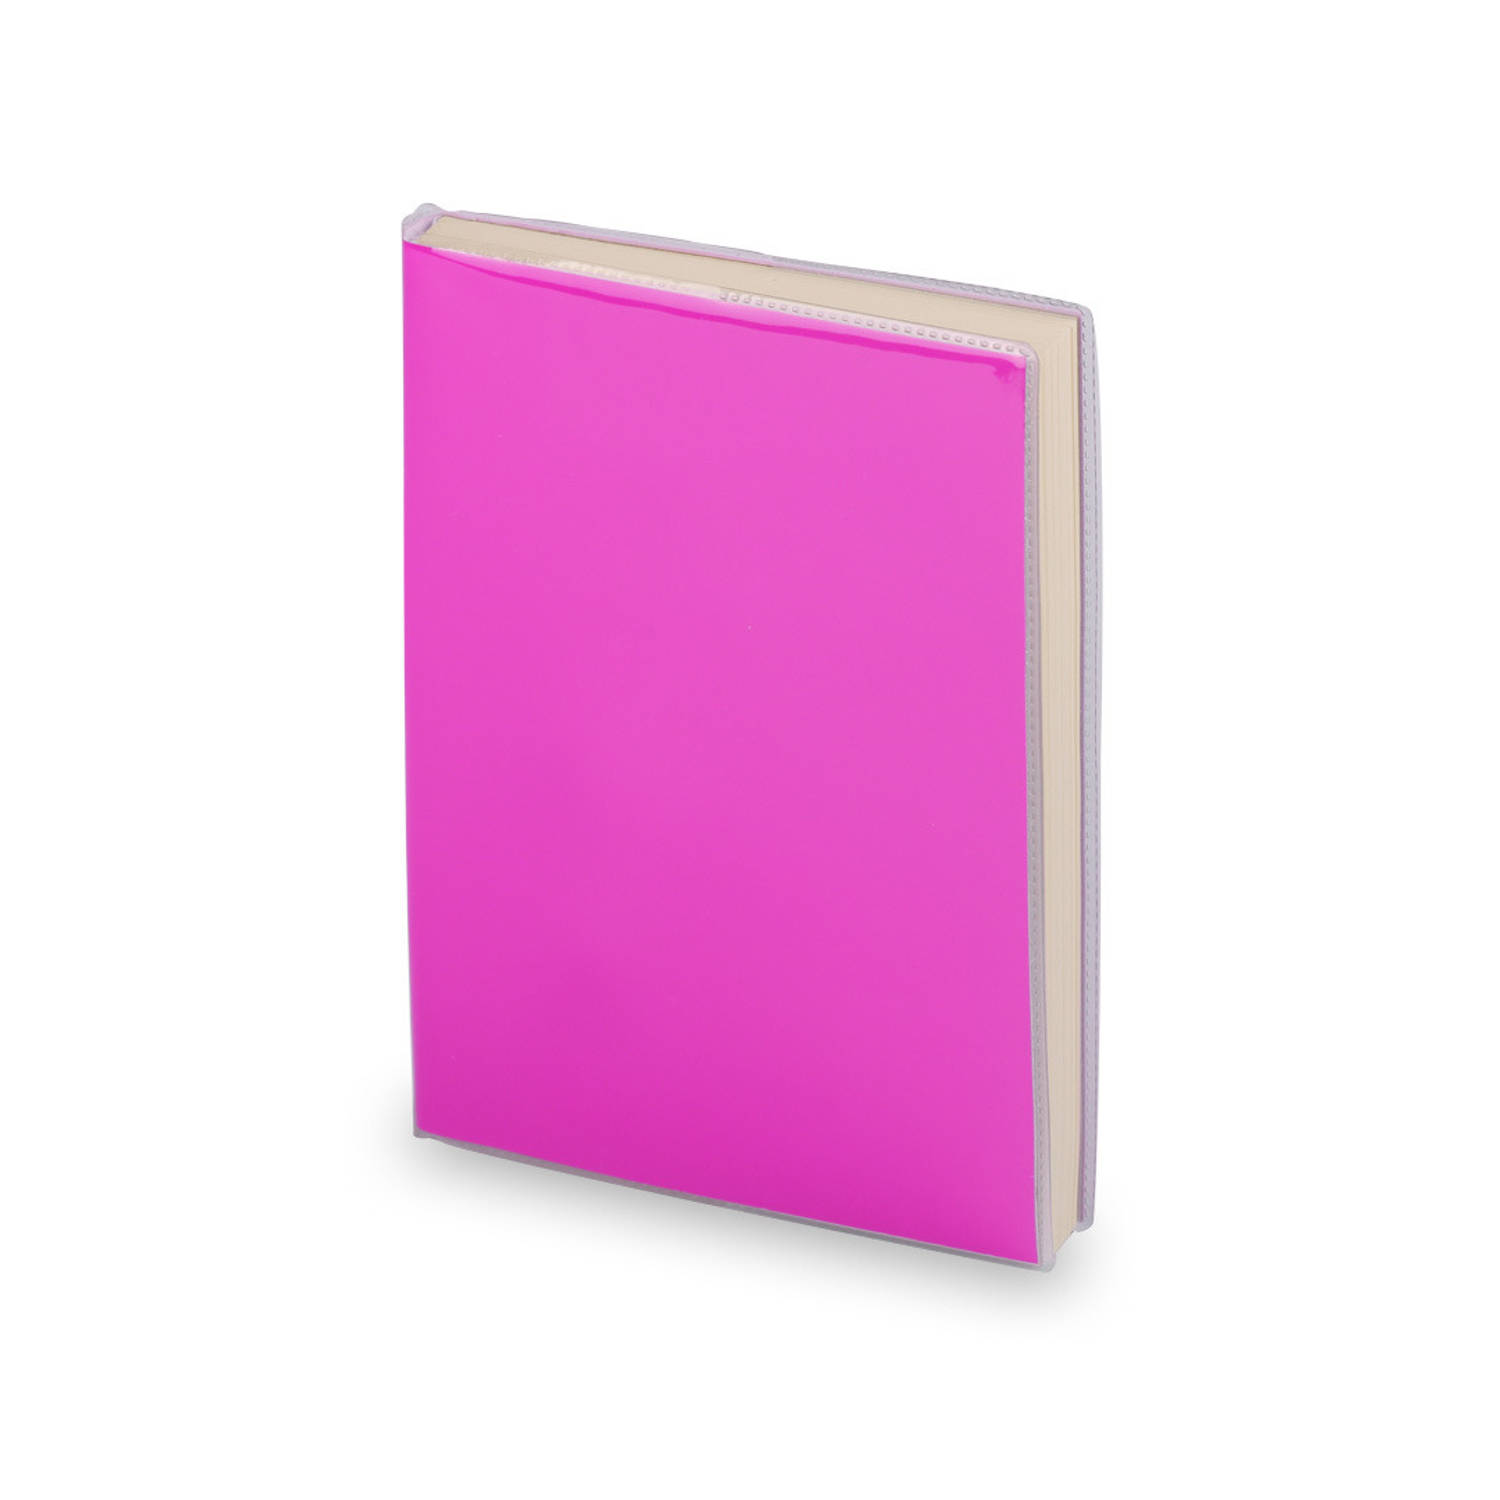 Notitieblokje zachte kaft roze met plastic hoes 10 x 13 cm - Notitieboek